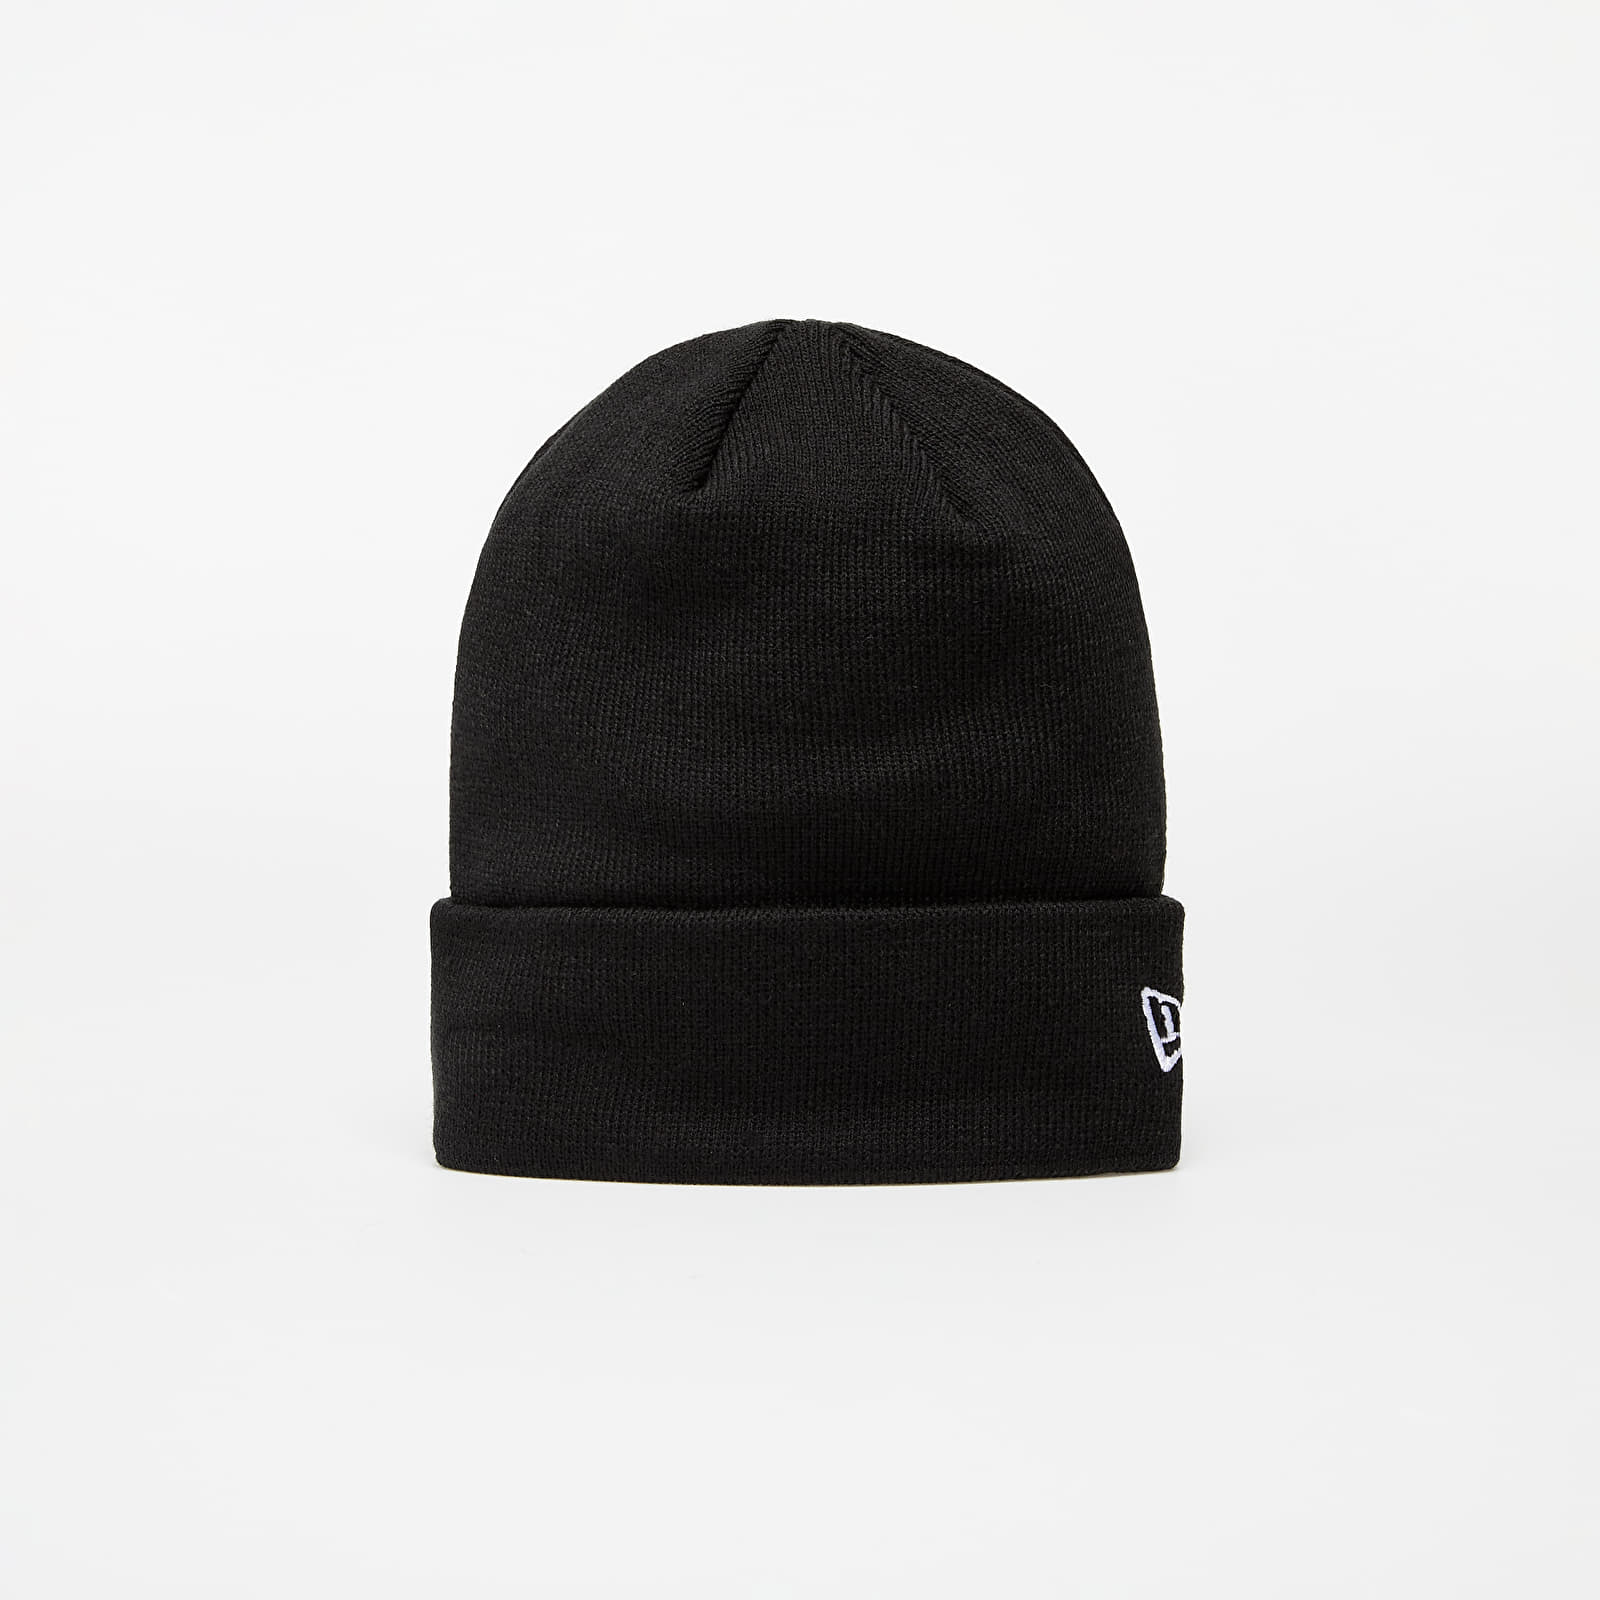 Hats New Era Essential Knit Black